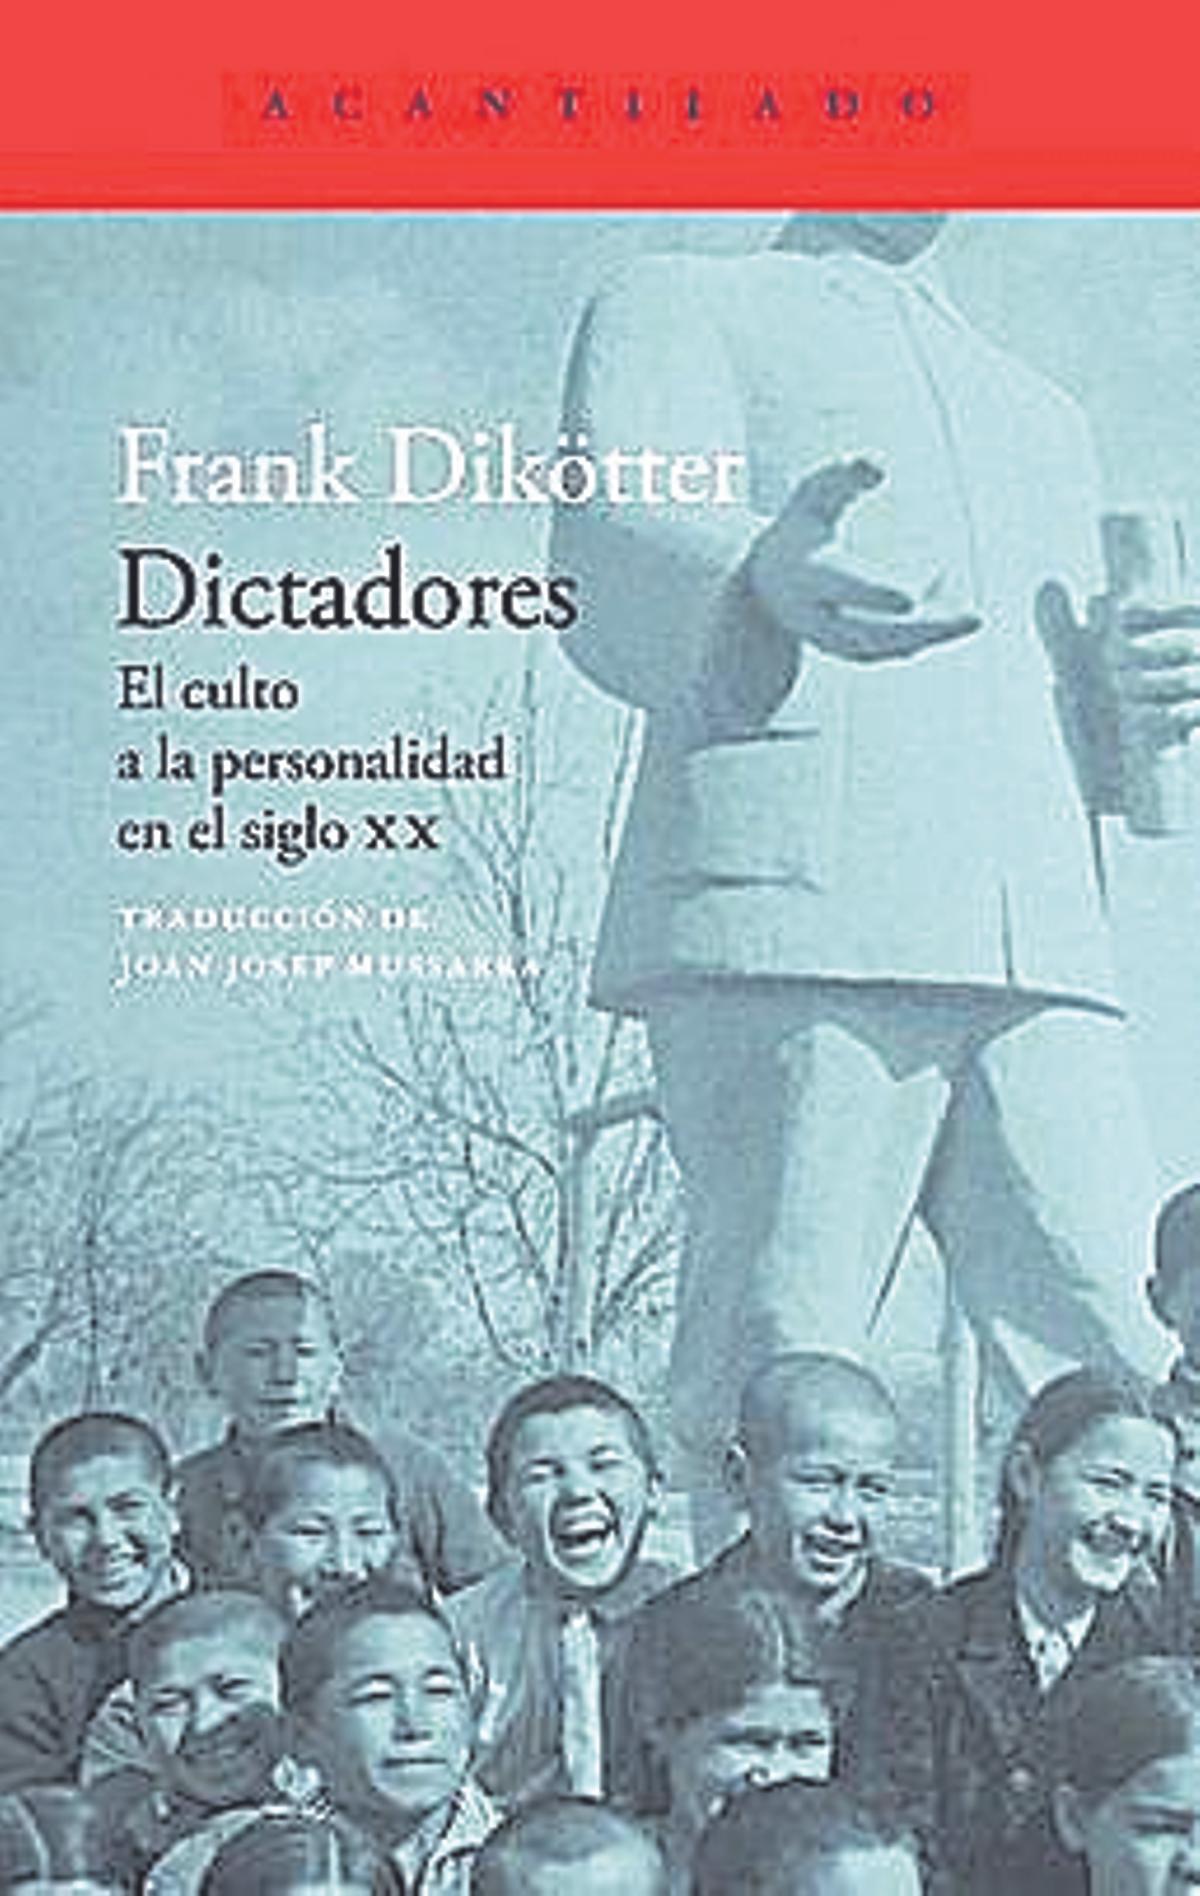 Frank Dikötter  Dictadores  Traducción de   Joan Josep Mussarra   Acantilado   384 páginas / 24 euros